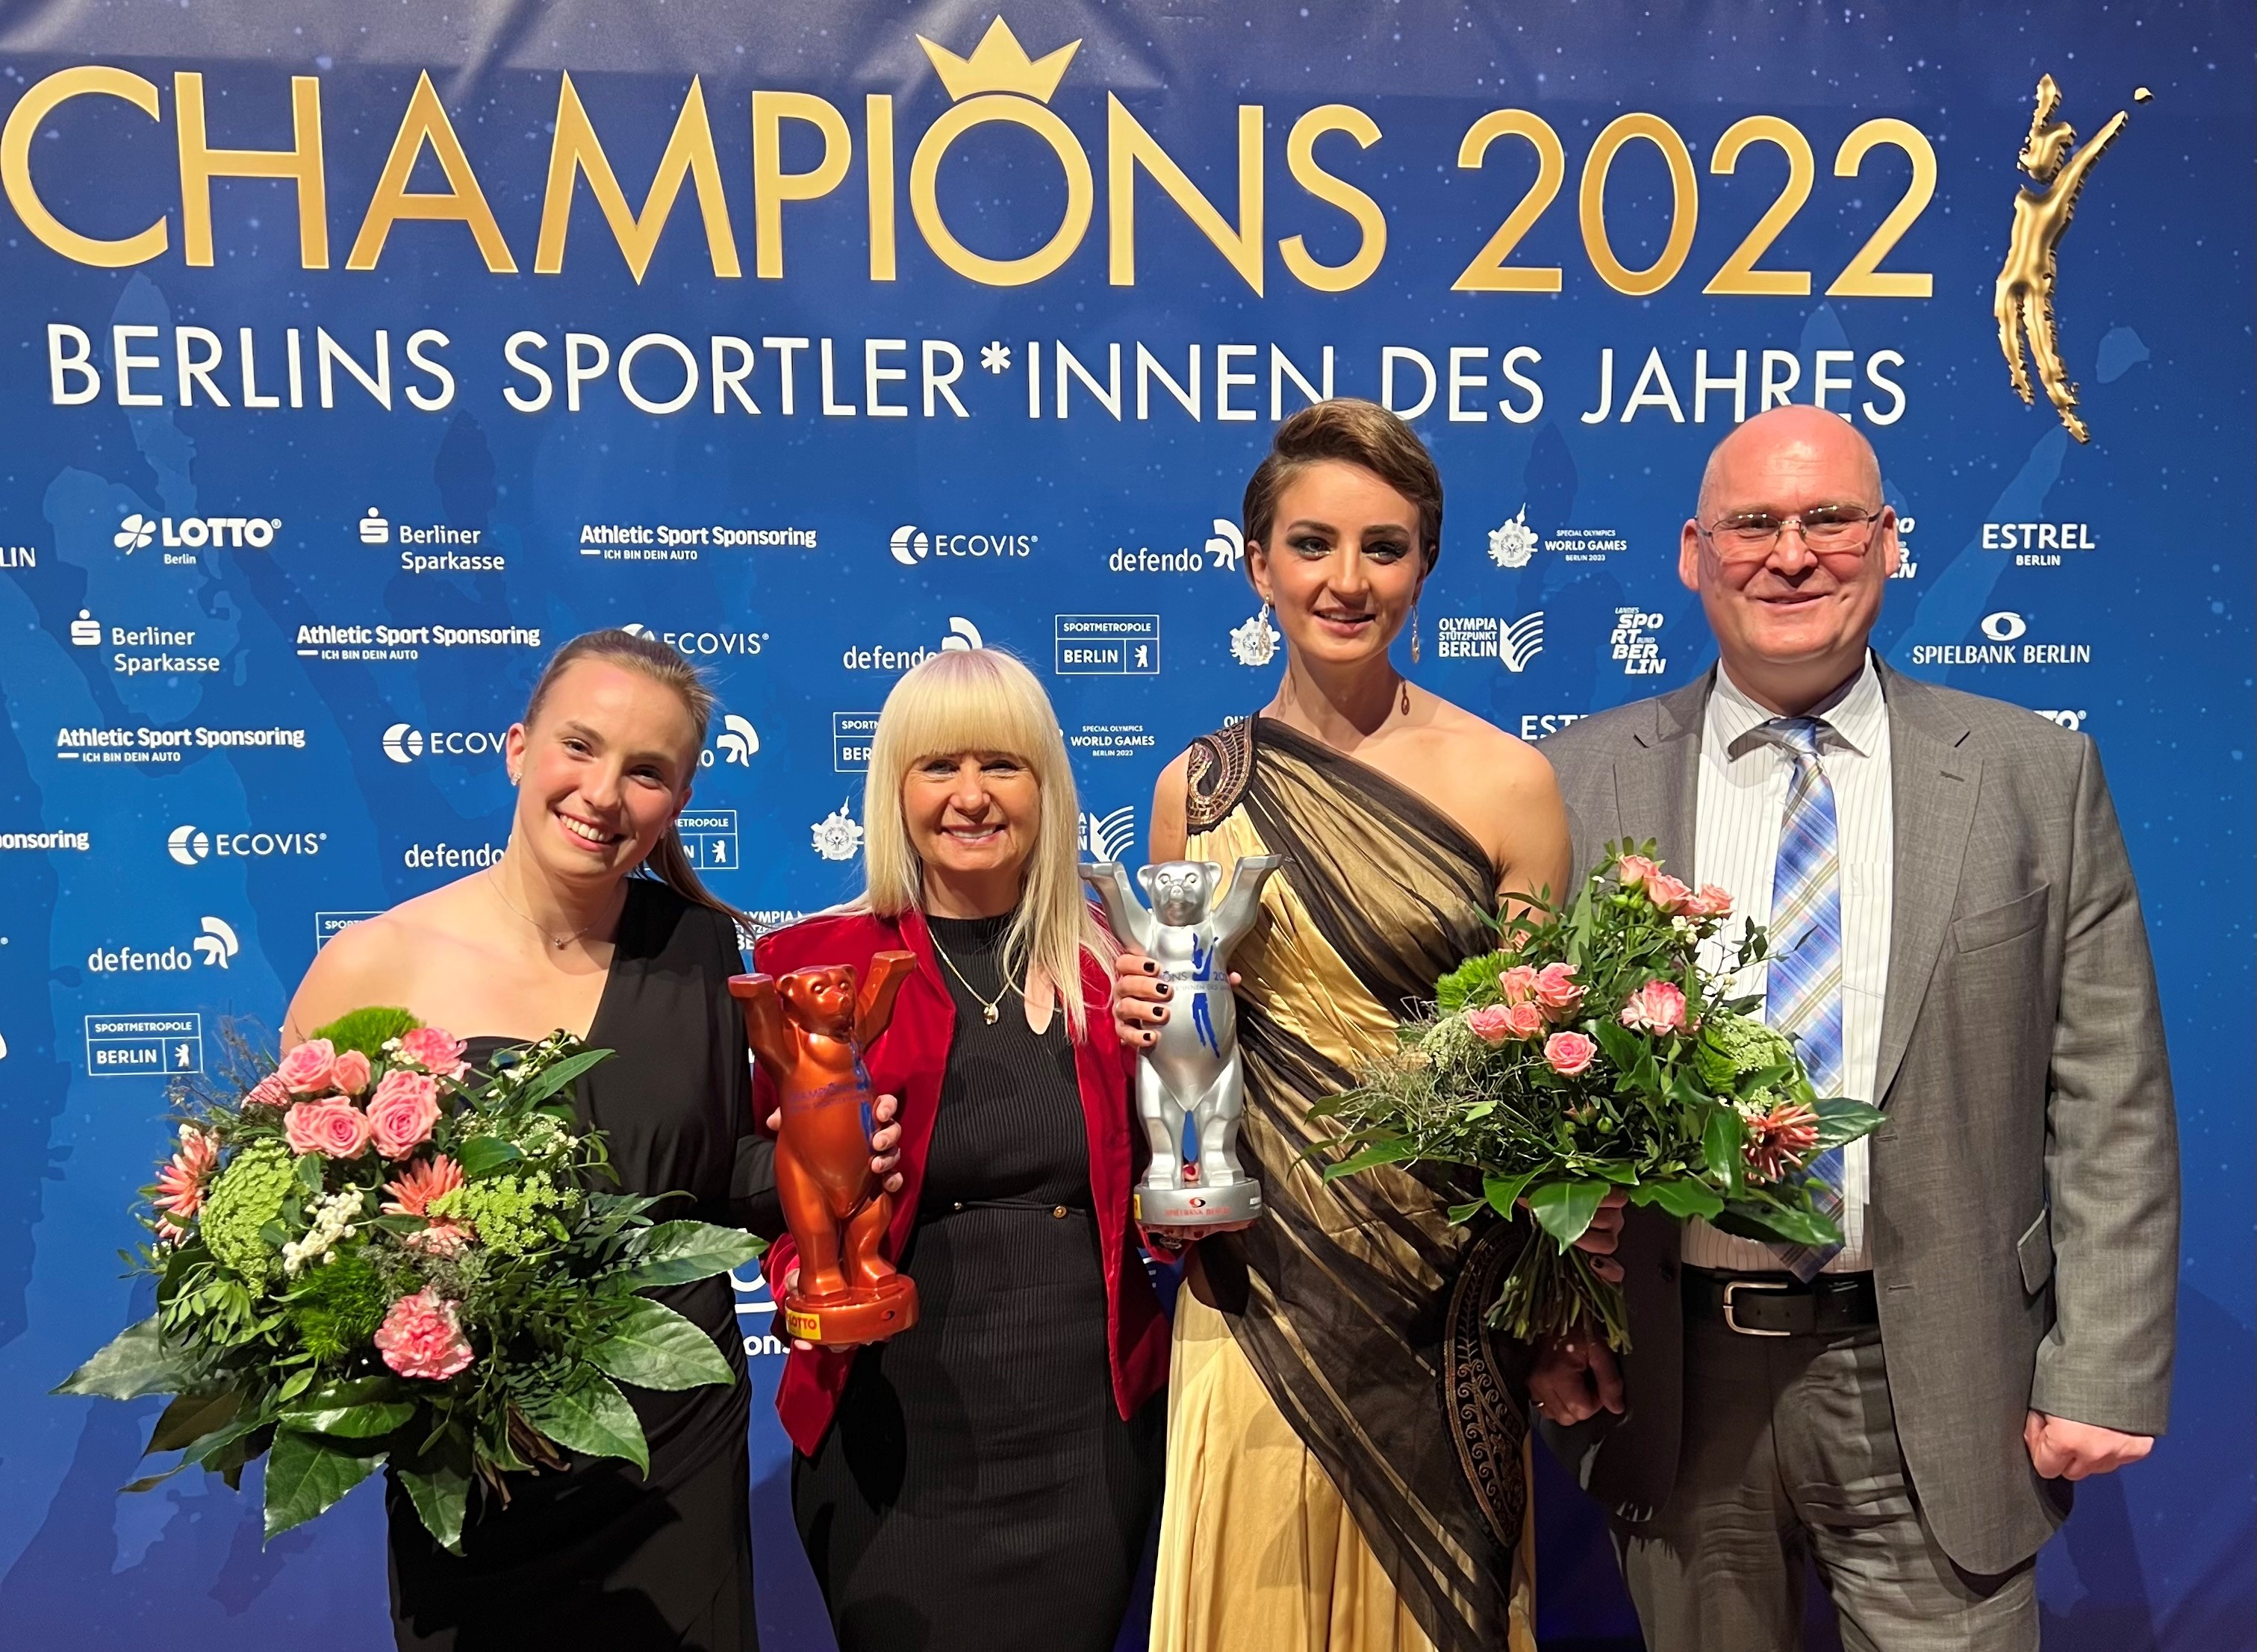 CHAMPIONS 2022 - Berlins Sportler*innen des Jahres: Spielbank Berlin übergibt Auszeichnung an Paralympics-Gold-Gewinnerin Elena Semechin und Olympia-Bronze-Gewinnerin Lena Hentschel